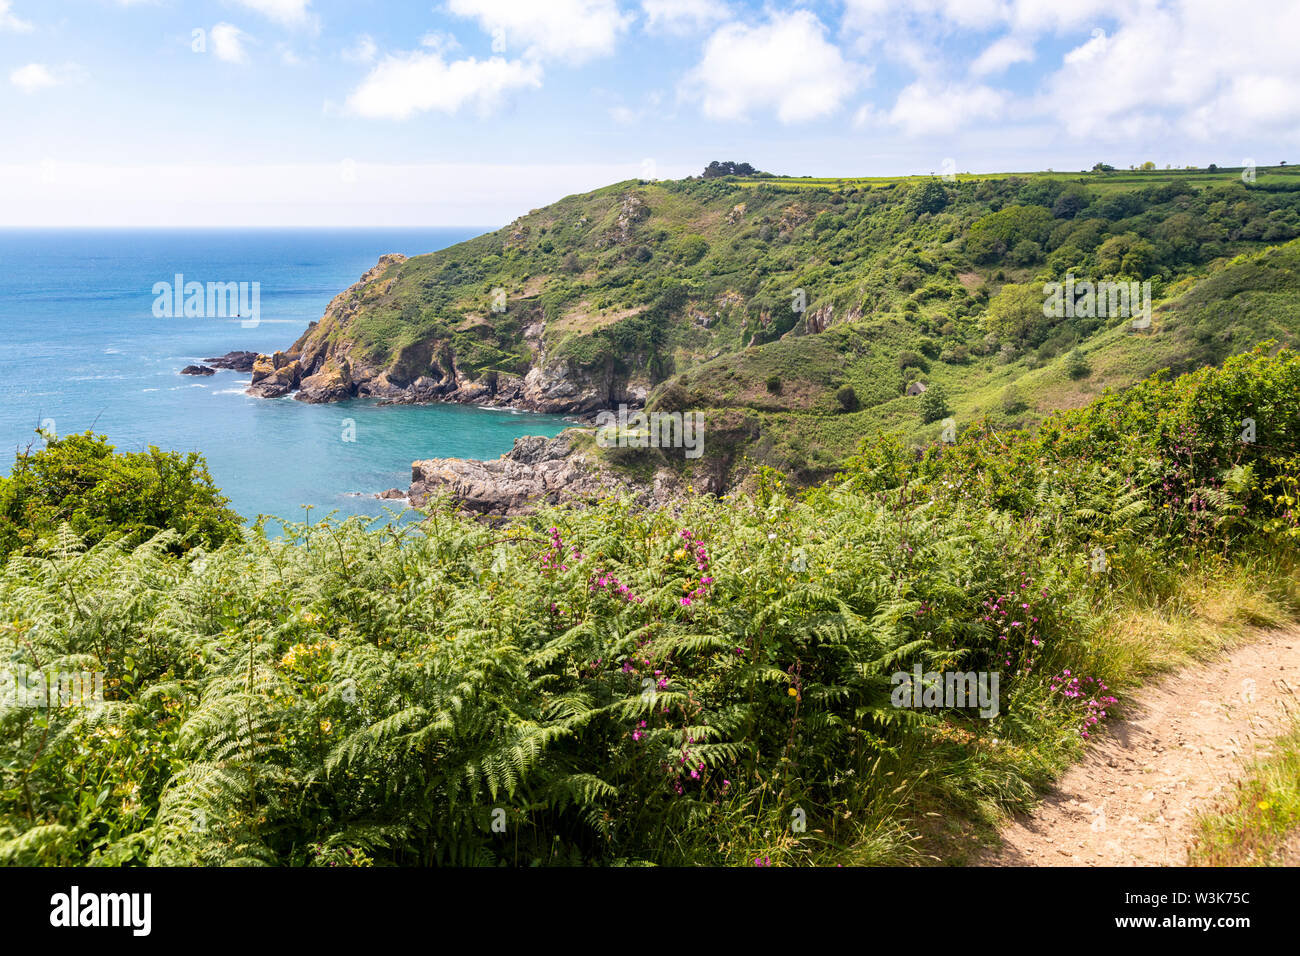 Il robusto bellissima costa sud dell'isola di Guernsey, Isole del Canale della Manica UK - fiori selvatici accanto al sentiero costiero che conduce al Petit Bot Bay Foto Stock